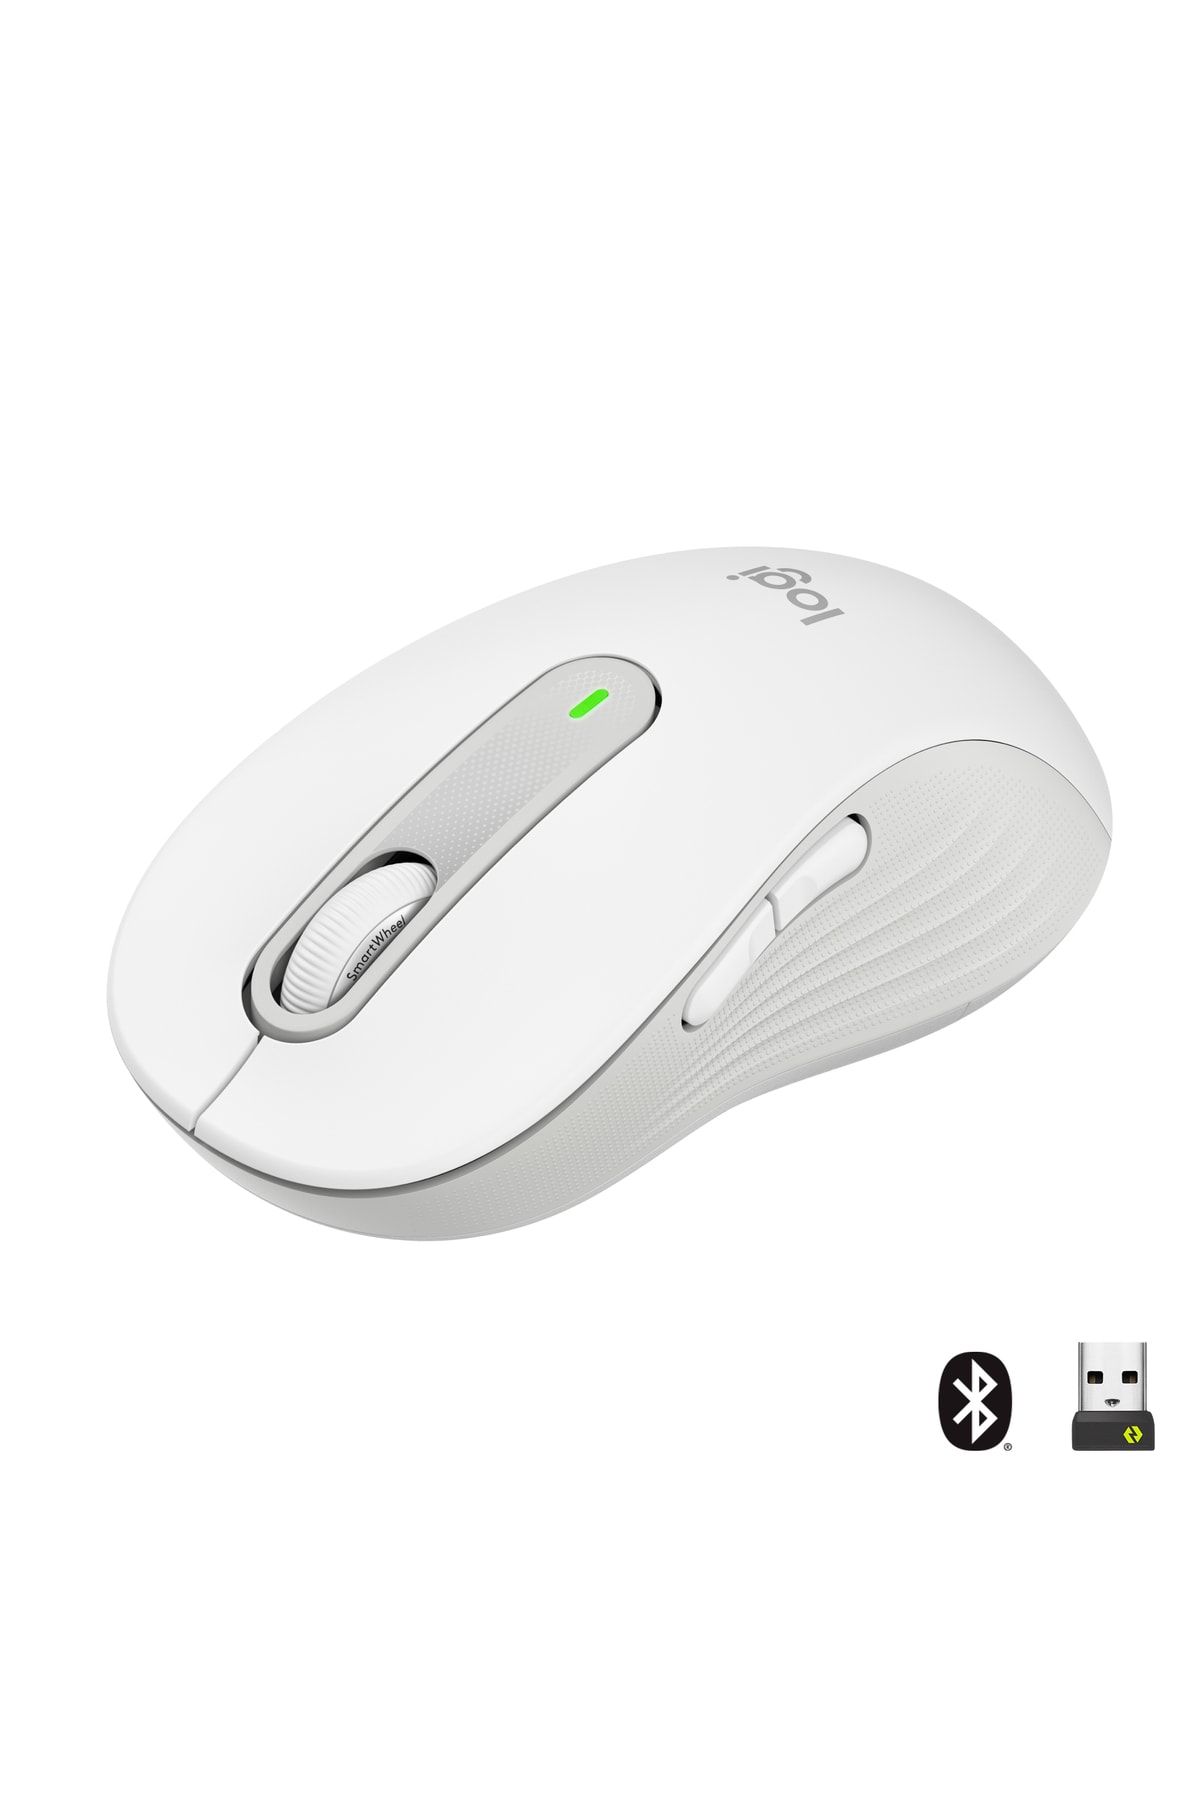 logitech Signature M650 Büyük Boy Sağ El Için Sessiz Kablosuz Mouse - Beyaz